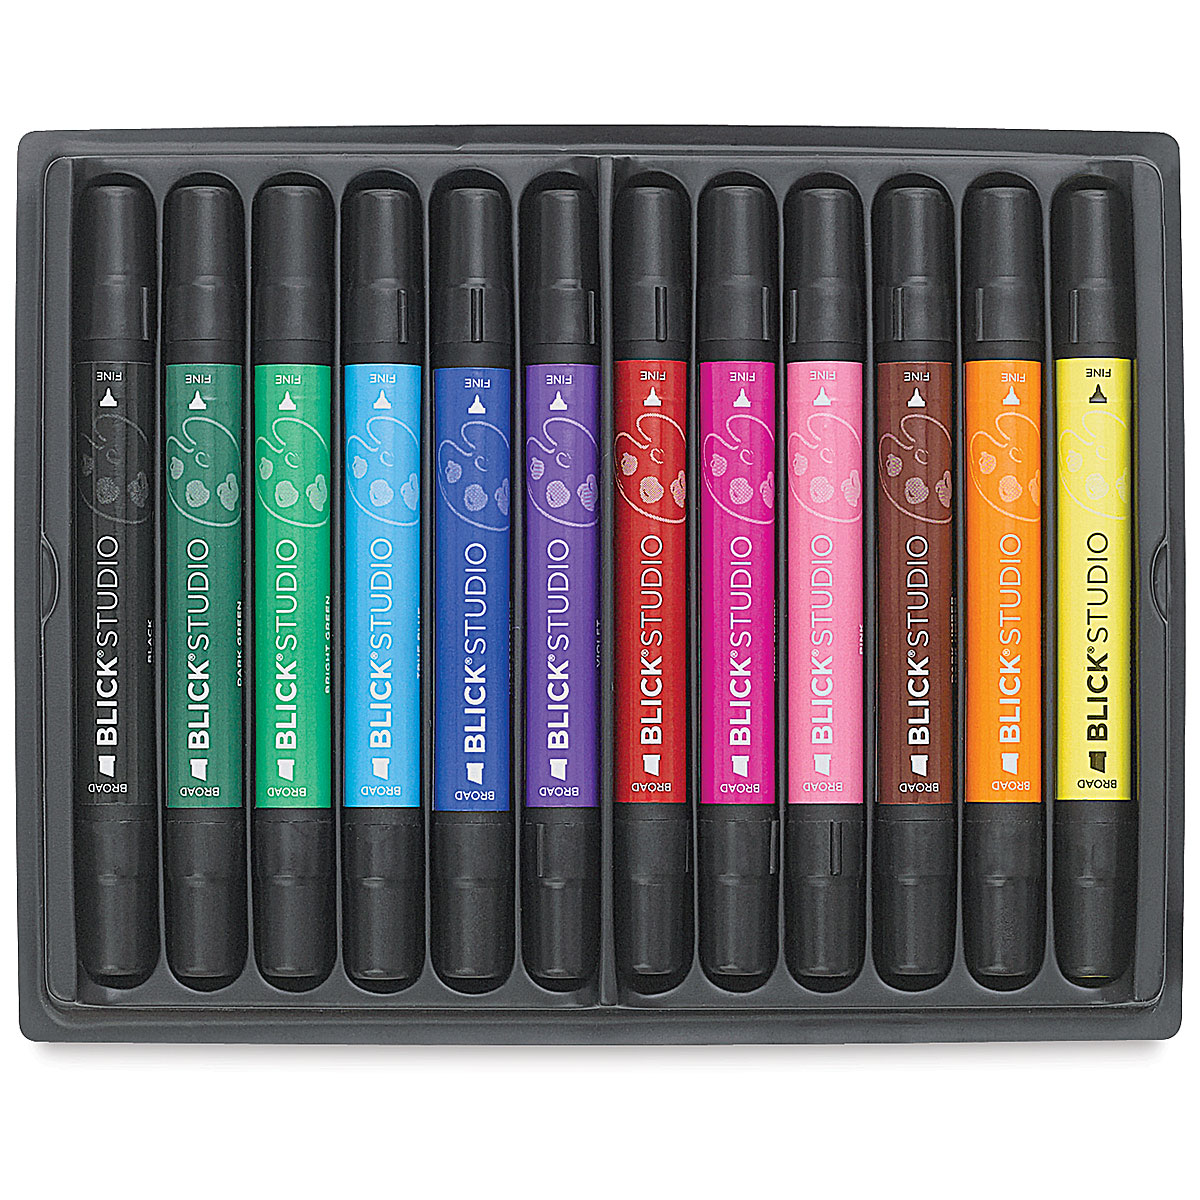 Blick Studio Marker Set - Assorted Colors, Set of 12 | BLICK Art Materials